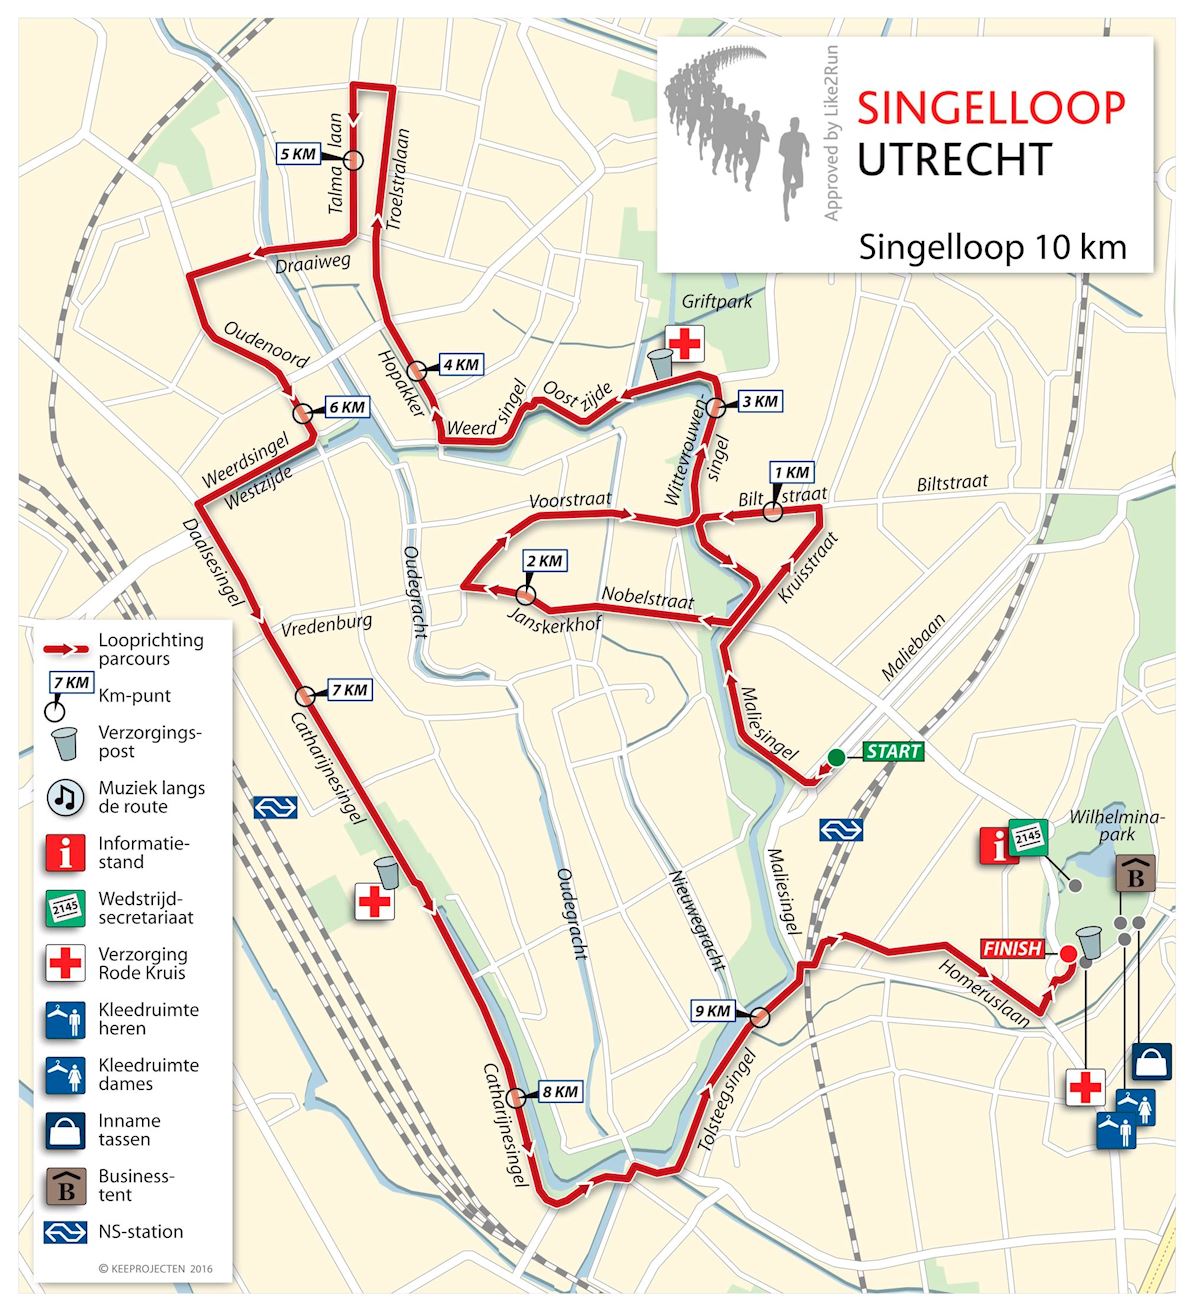 Singelloop Utrecht Routenkarte